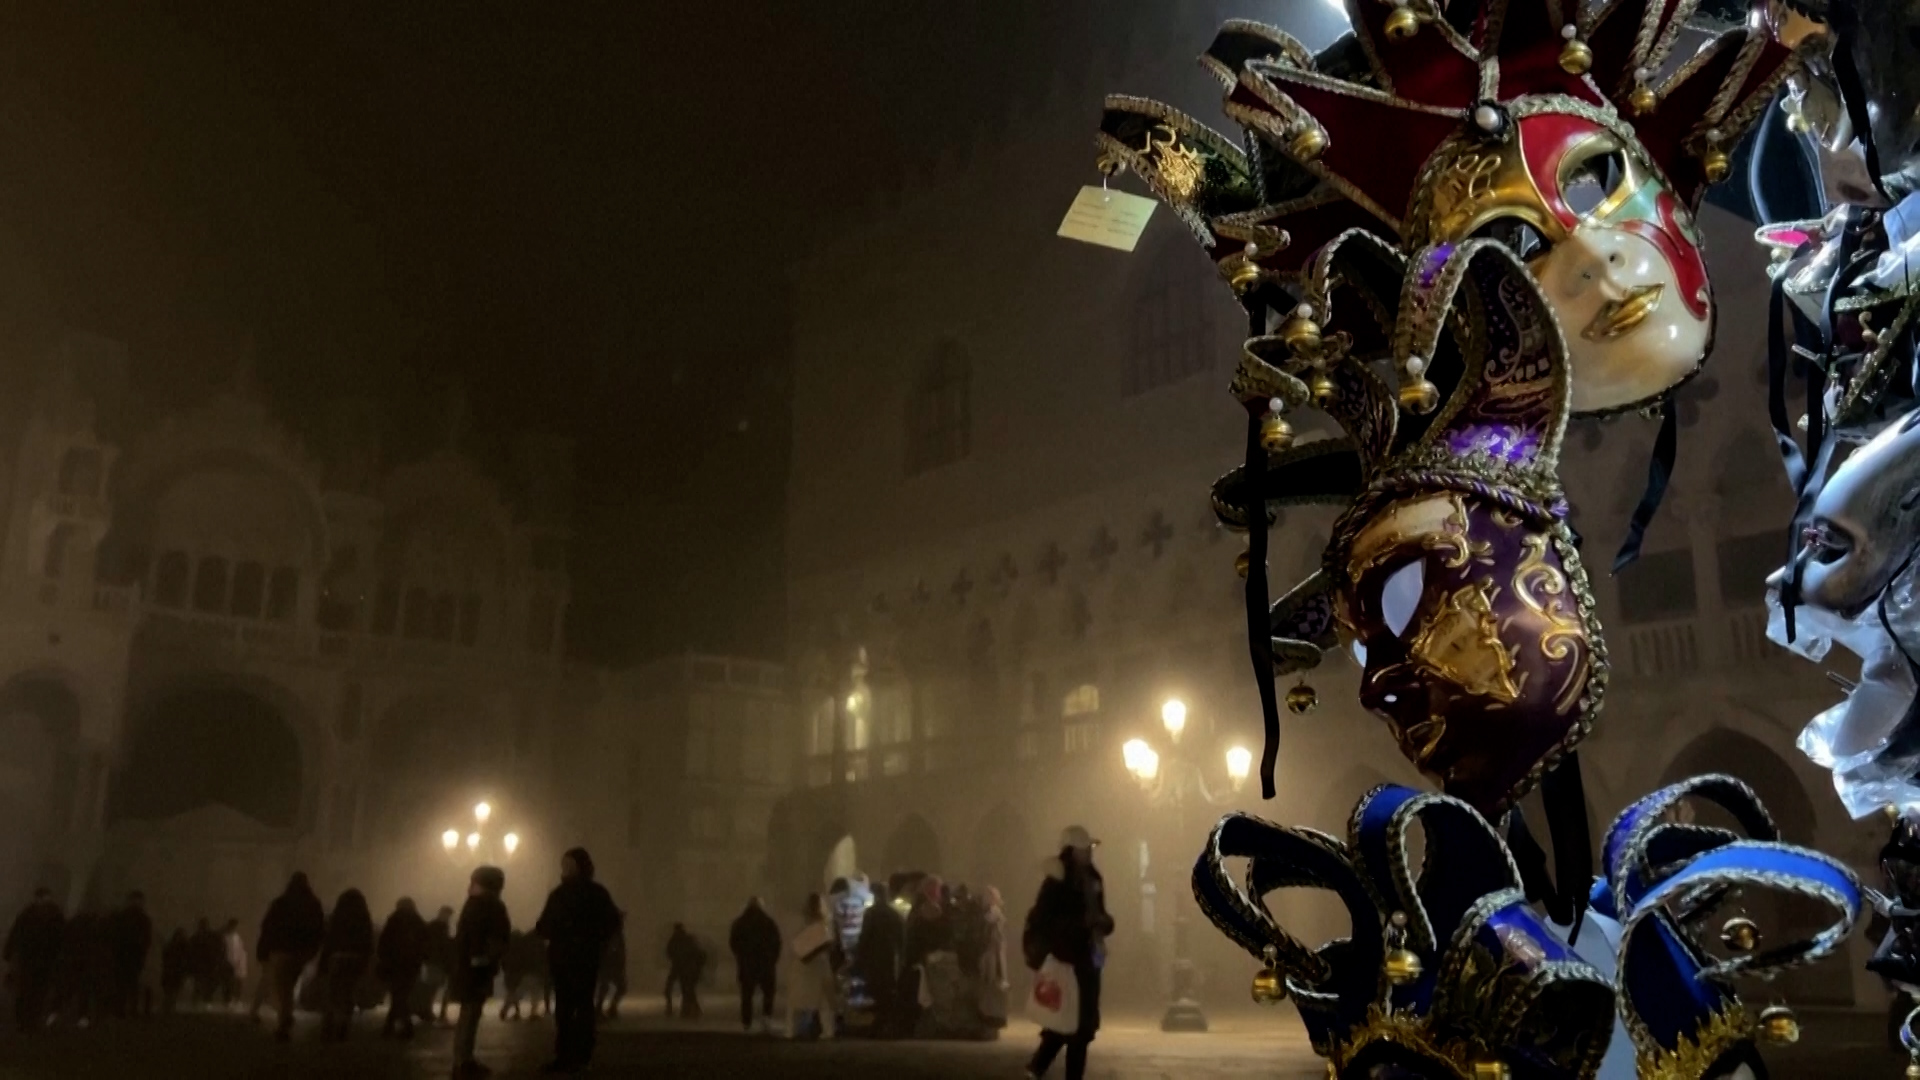 Βίντεο: Μασκοφόροι καρναβαλιστές καταφθάνουν στην ομιχλώδη Βενετία για το ετήσιο καρναβάλι